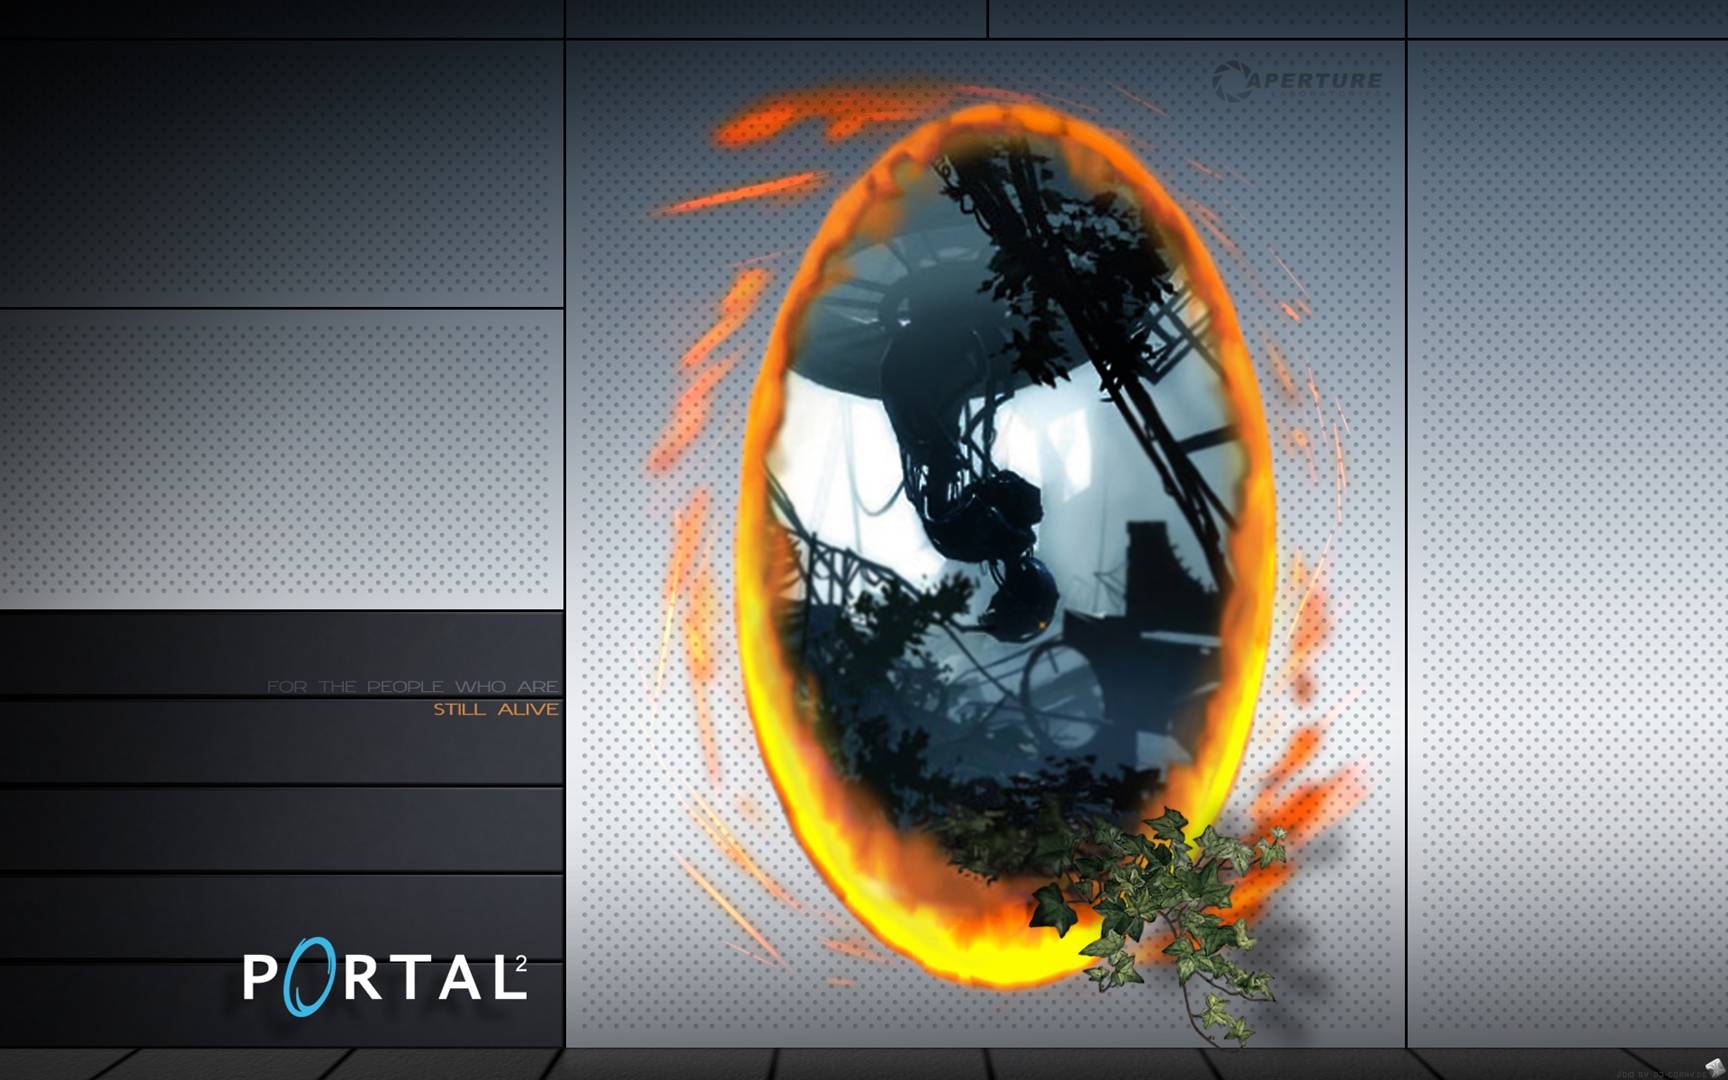 Portal 2 Wallpapers in full 1080P HD GamingBoltcom Video Game